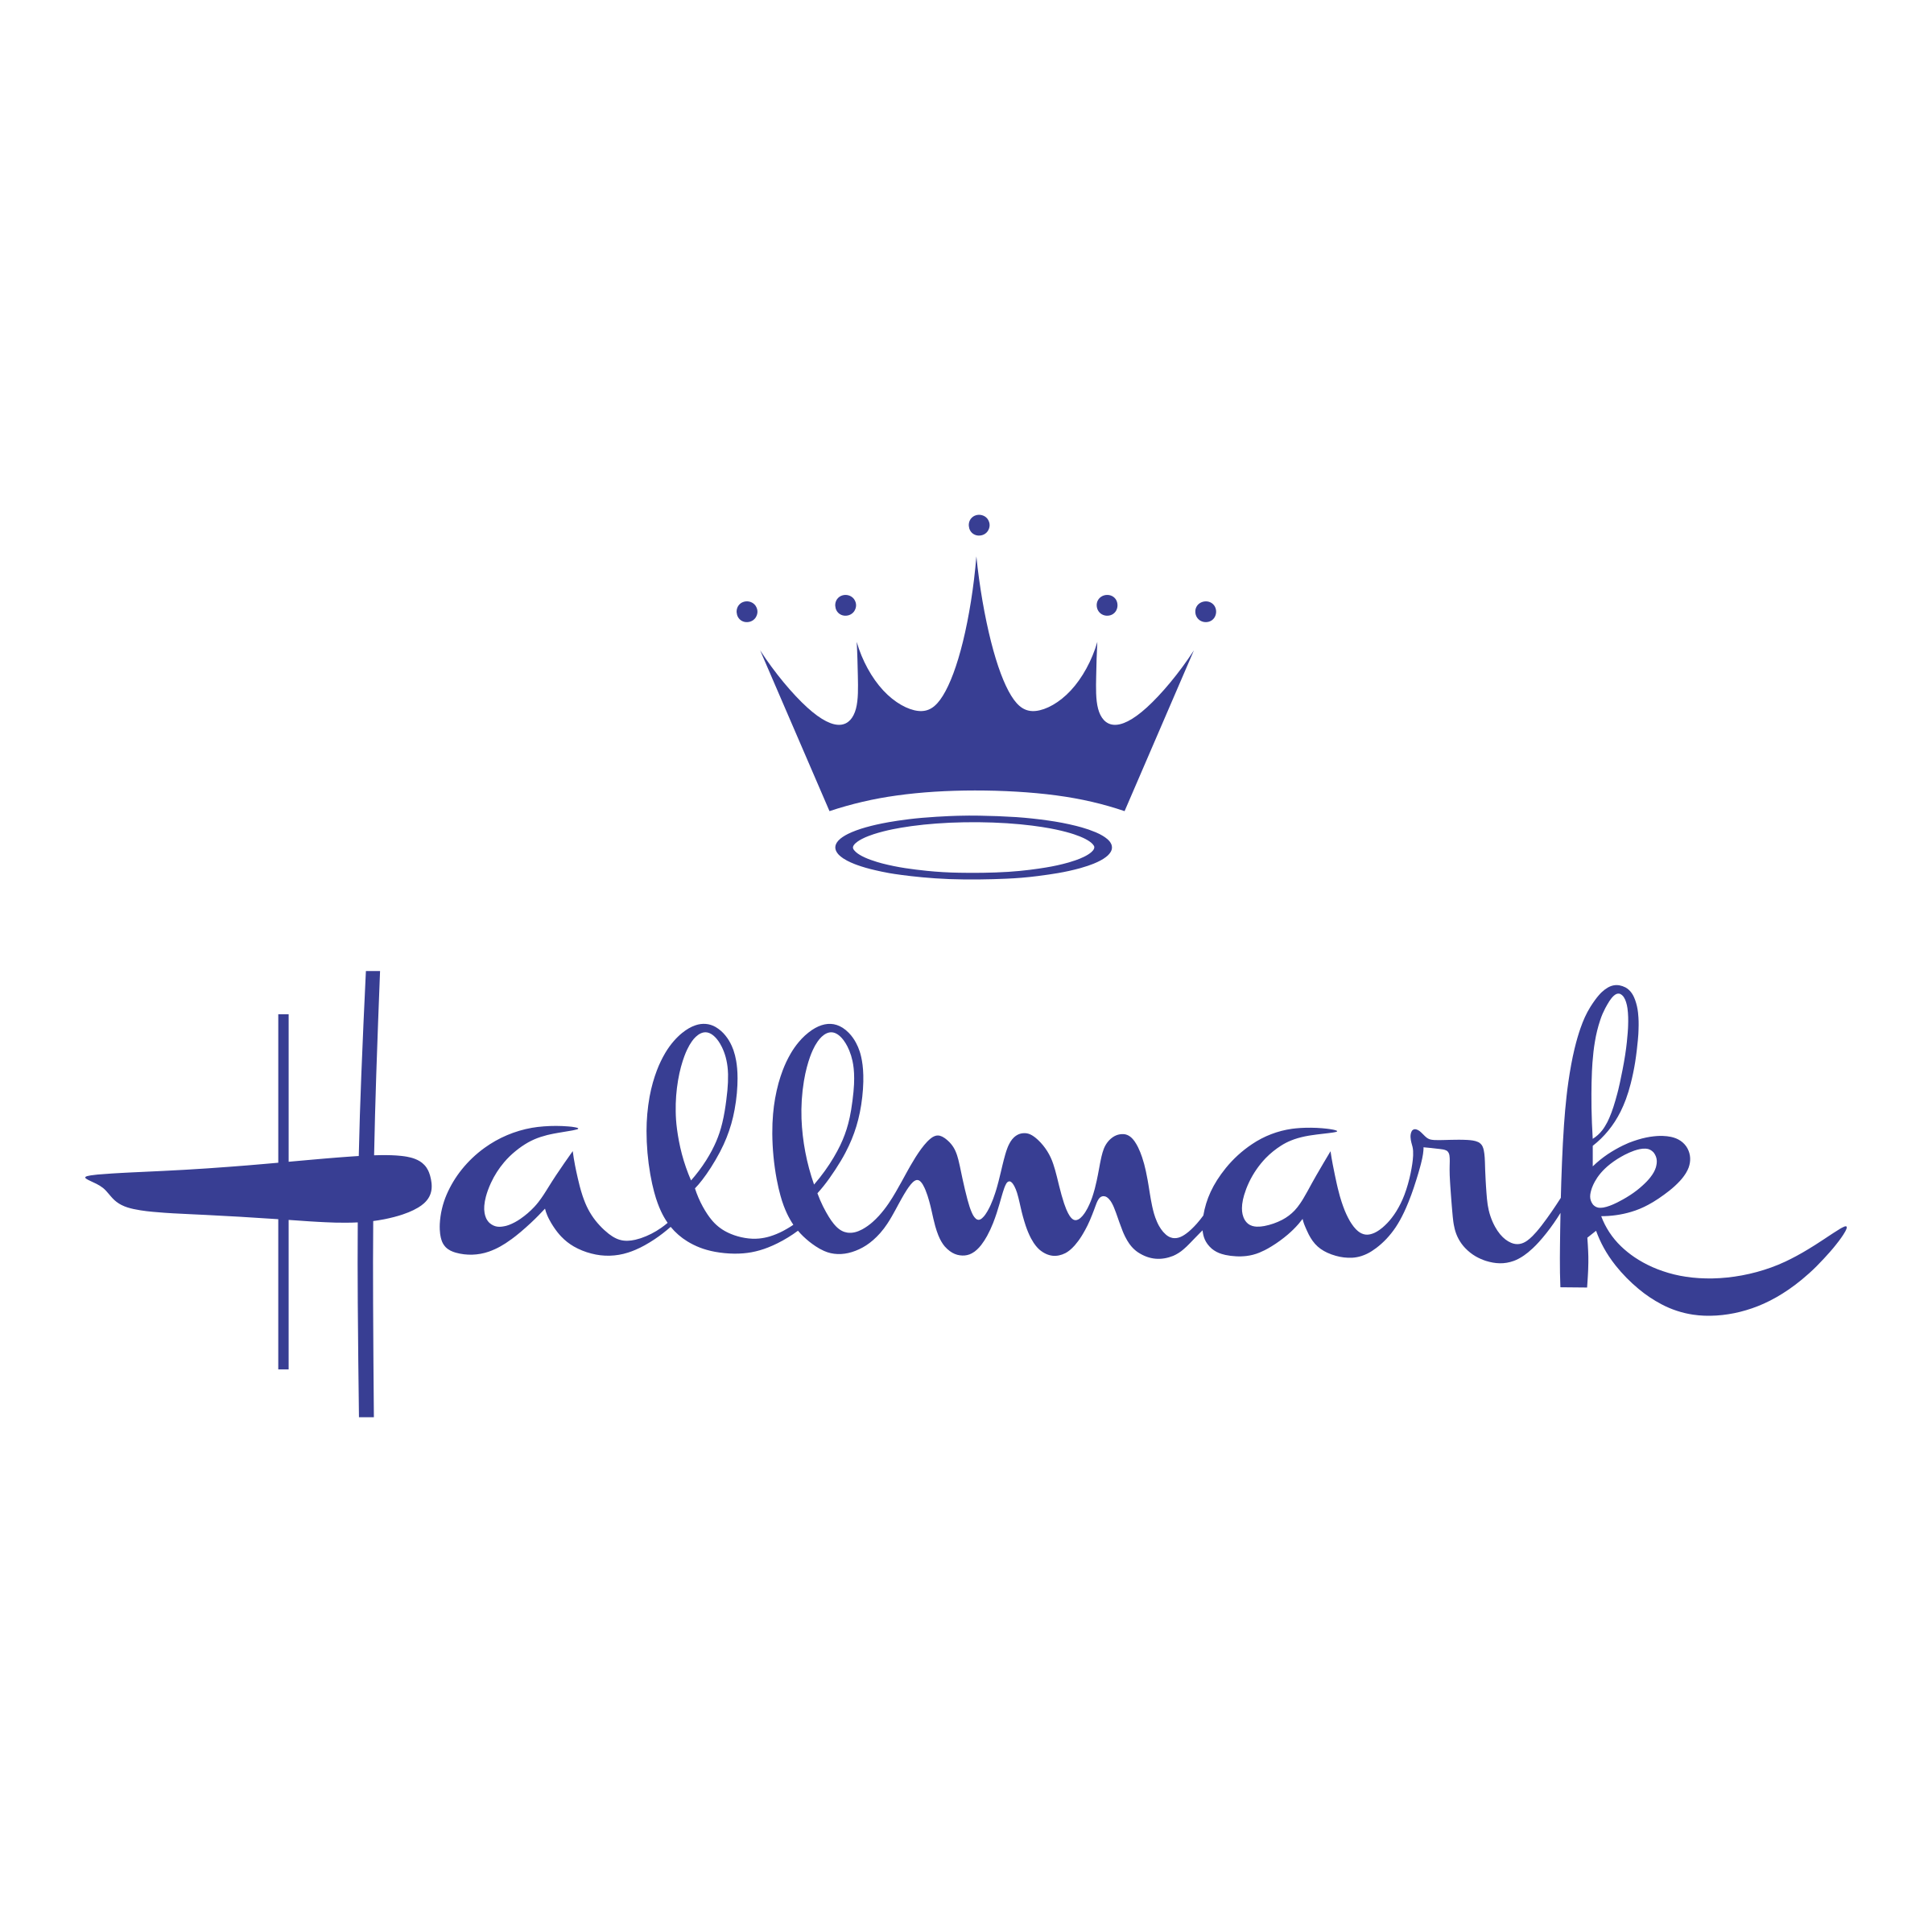 Hallmark Cards, Inc.